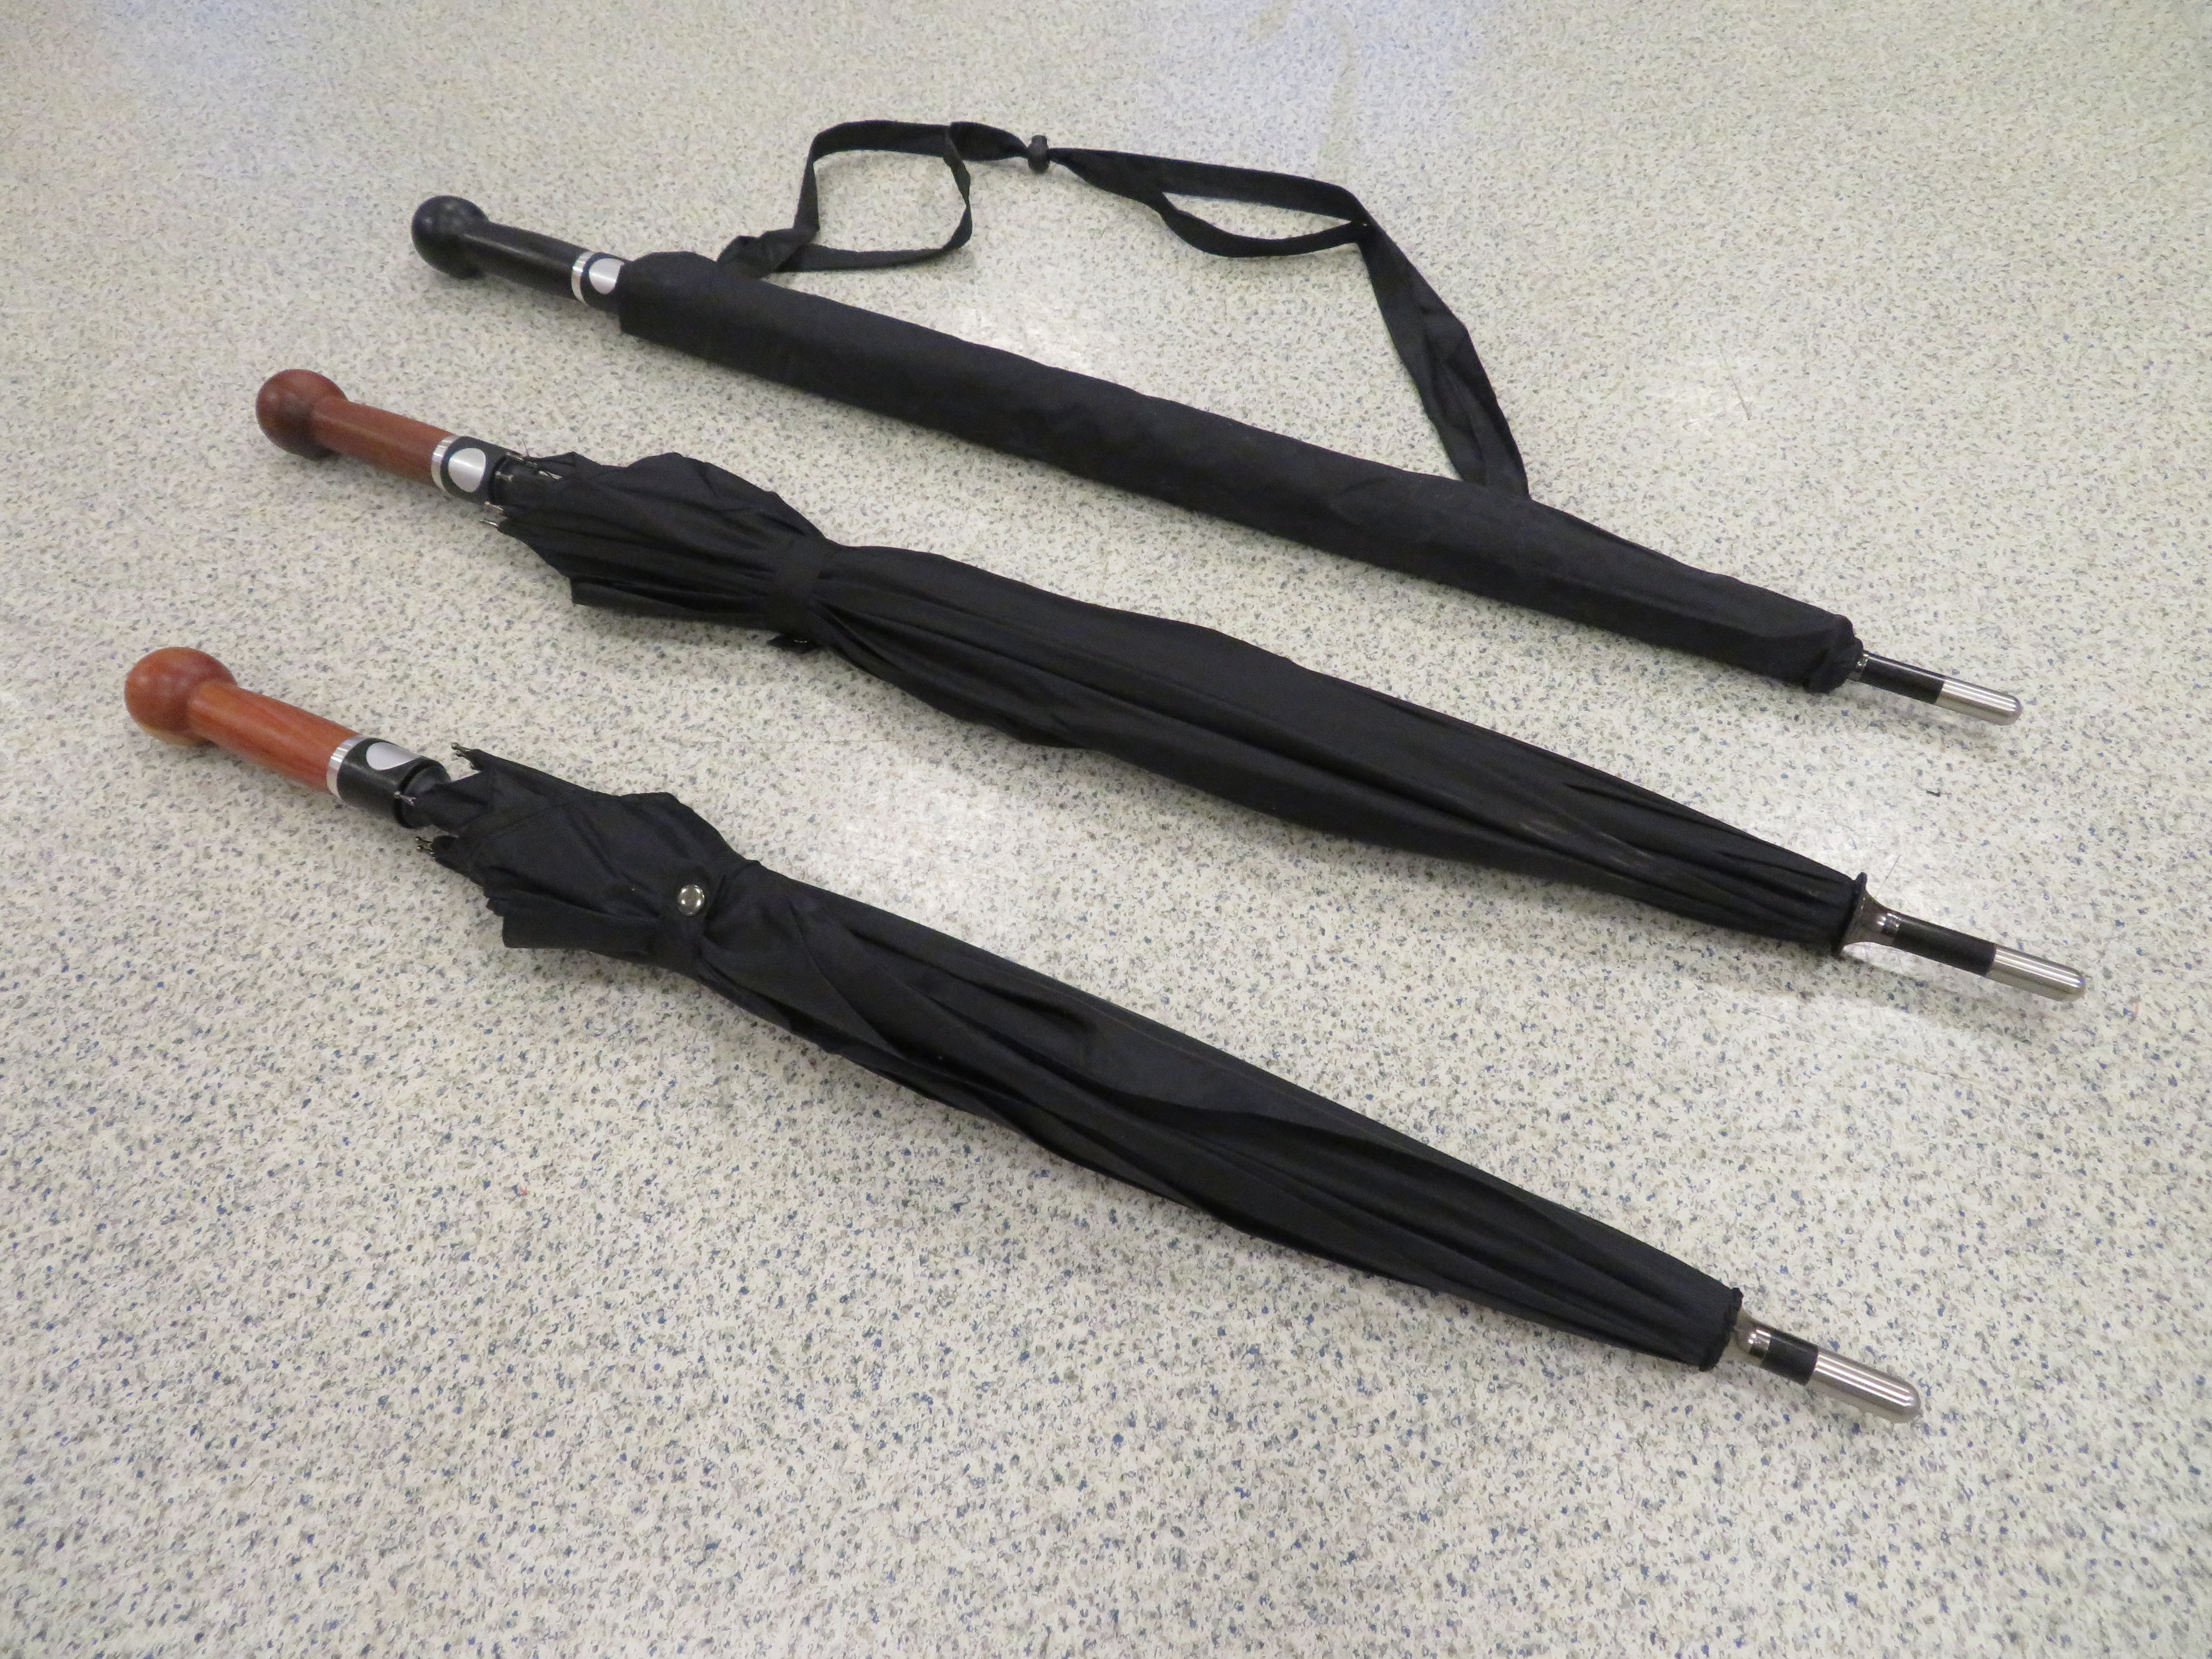 Modely obranných deštníků od společnosti Cold Steel  s kulovou hlavicí/držadlem ve dvou velikostech.